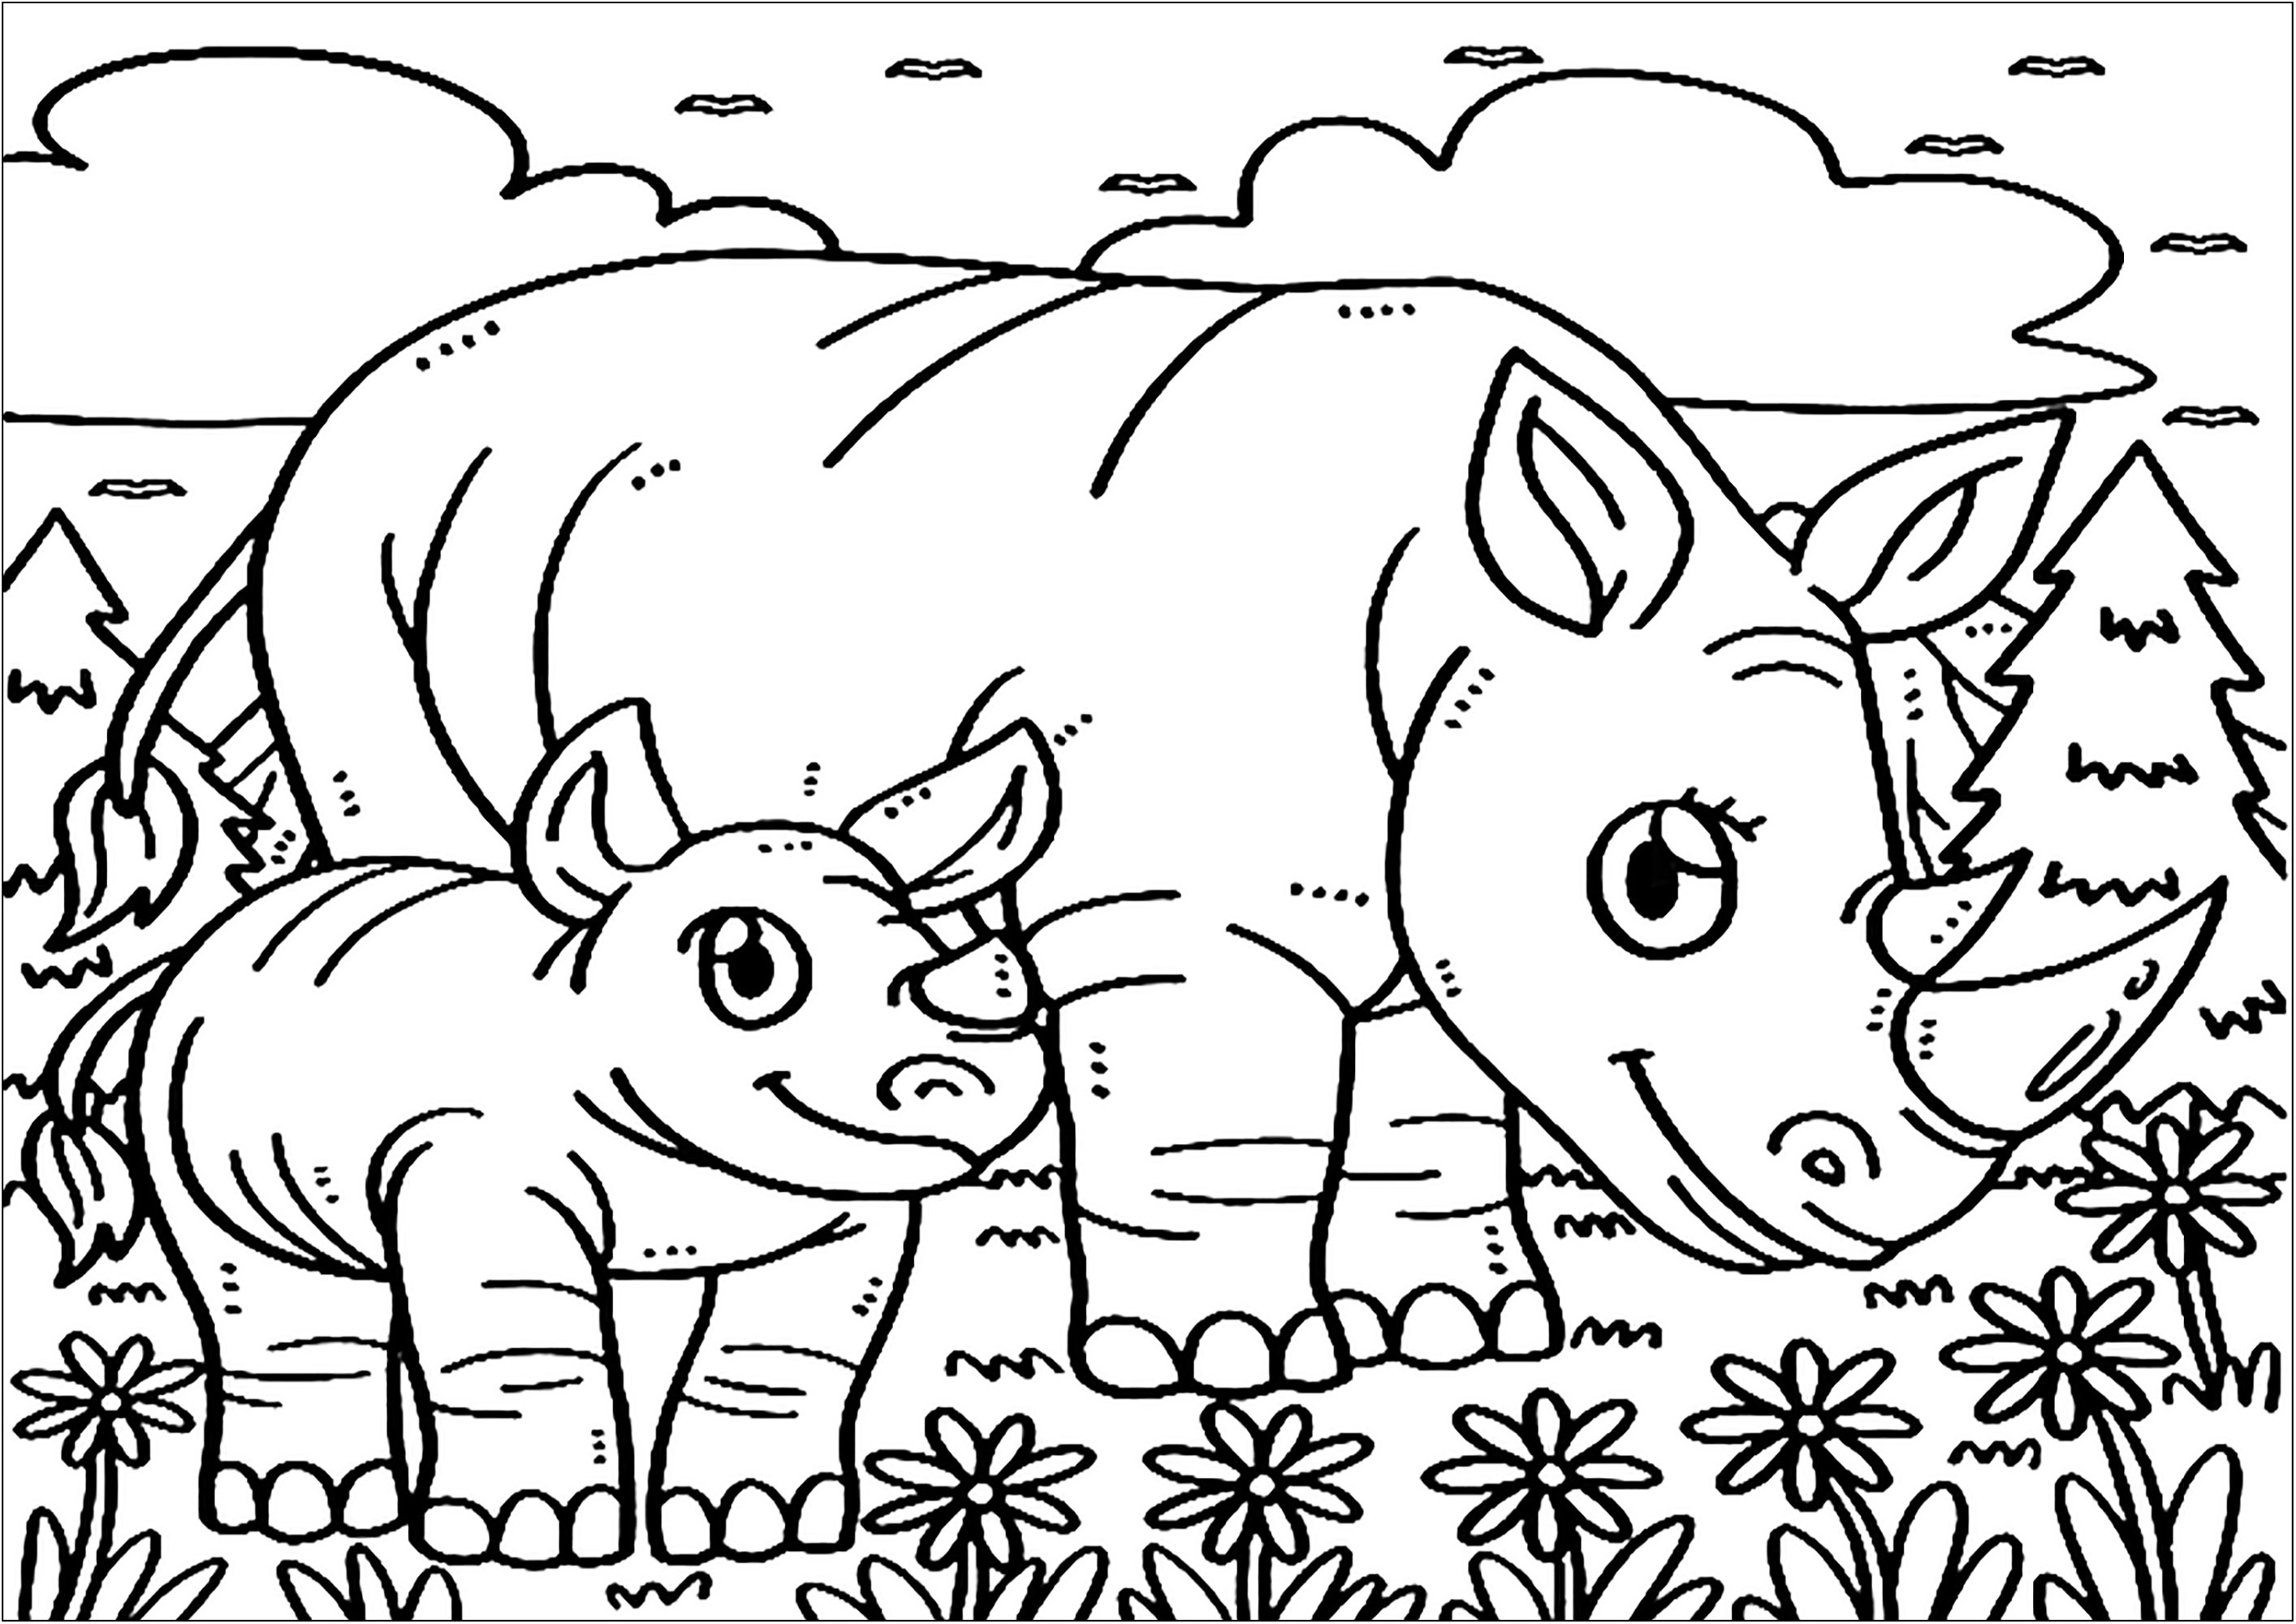 Deux Rhinocéros. Un joli coloriage avec de nombreux détails à colorier : paysage, fleurs, nuages ...